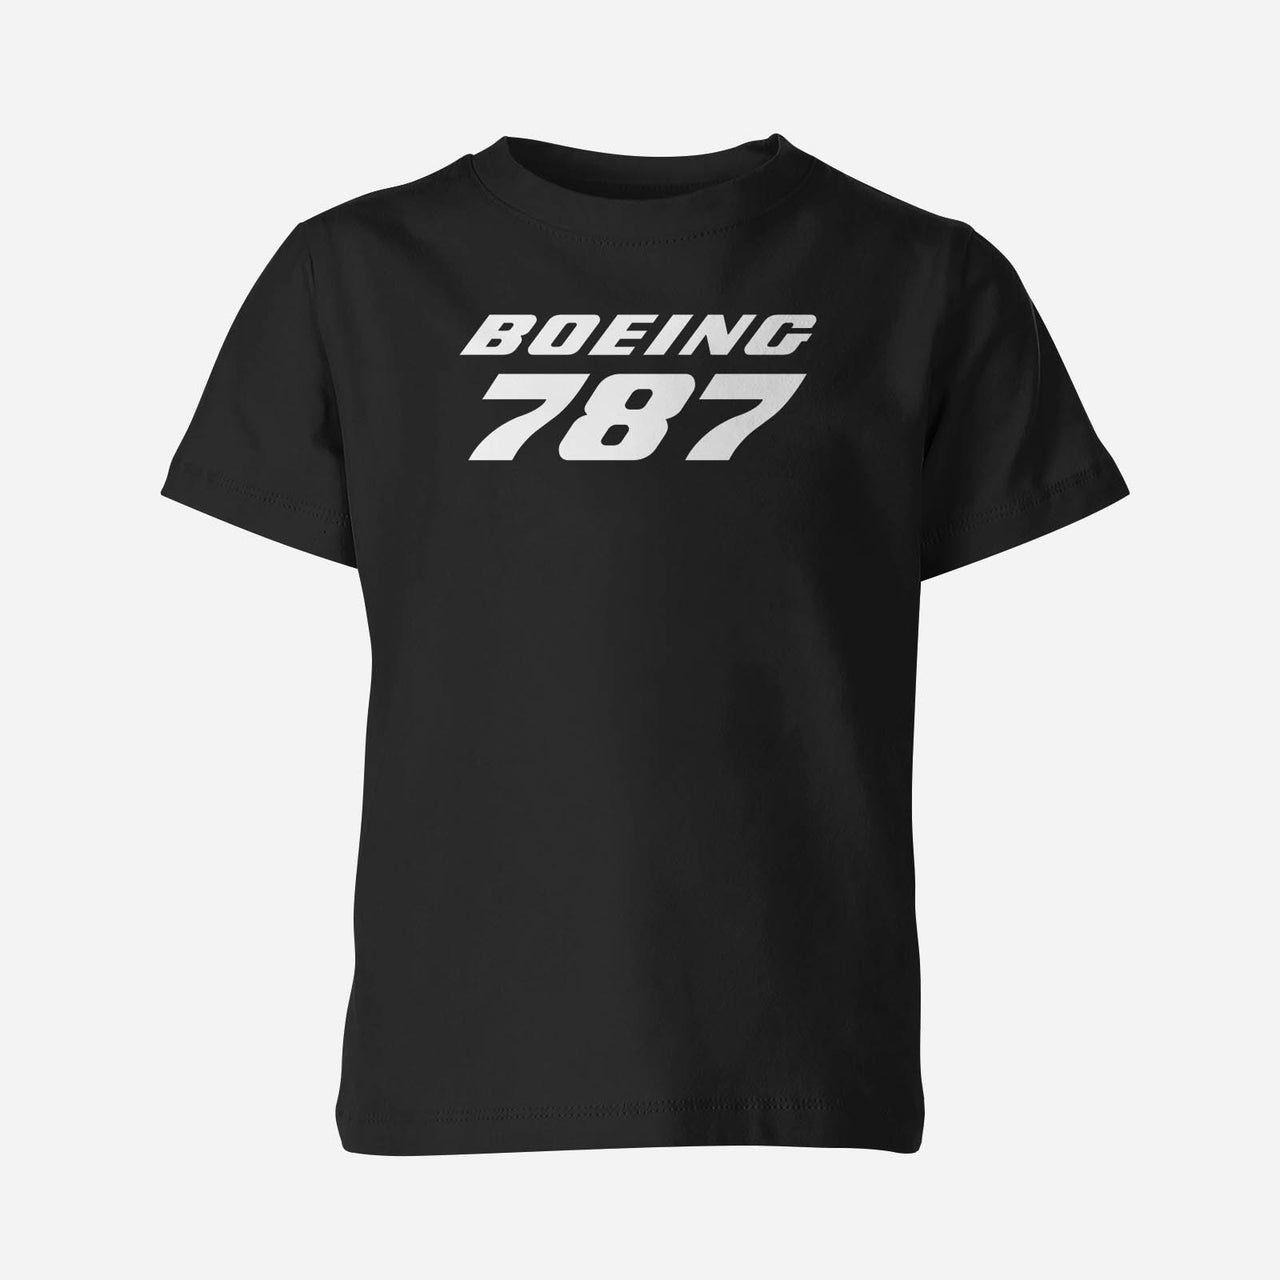 Boeing 787 & Text Designed Children T-Shirts